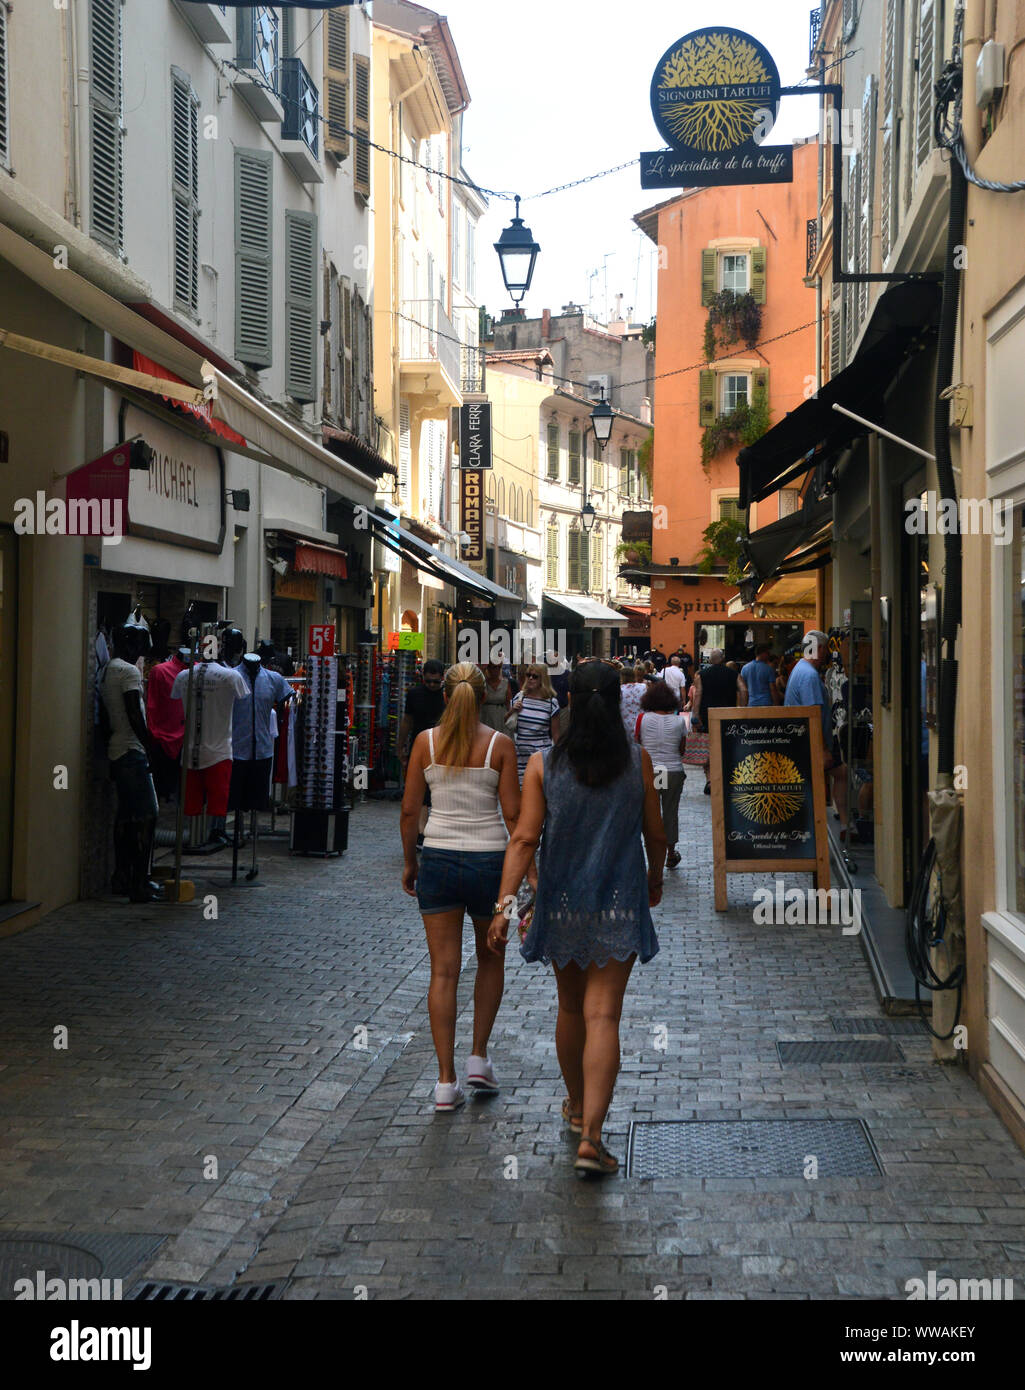 Deux jeunes filles en se promenant dans la rue étroite de la rue Meynadier, dans la vieille ville de Cannes, Côte d'Azur, France, Union européenne. Banque D'Images